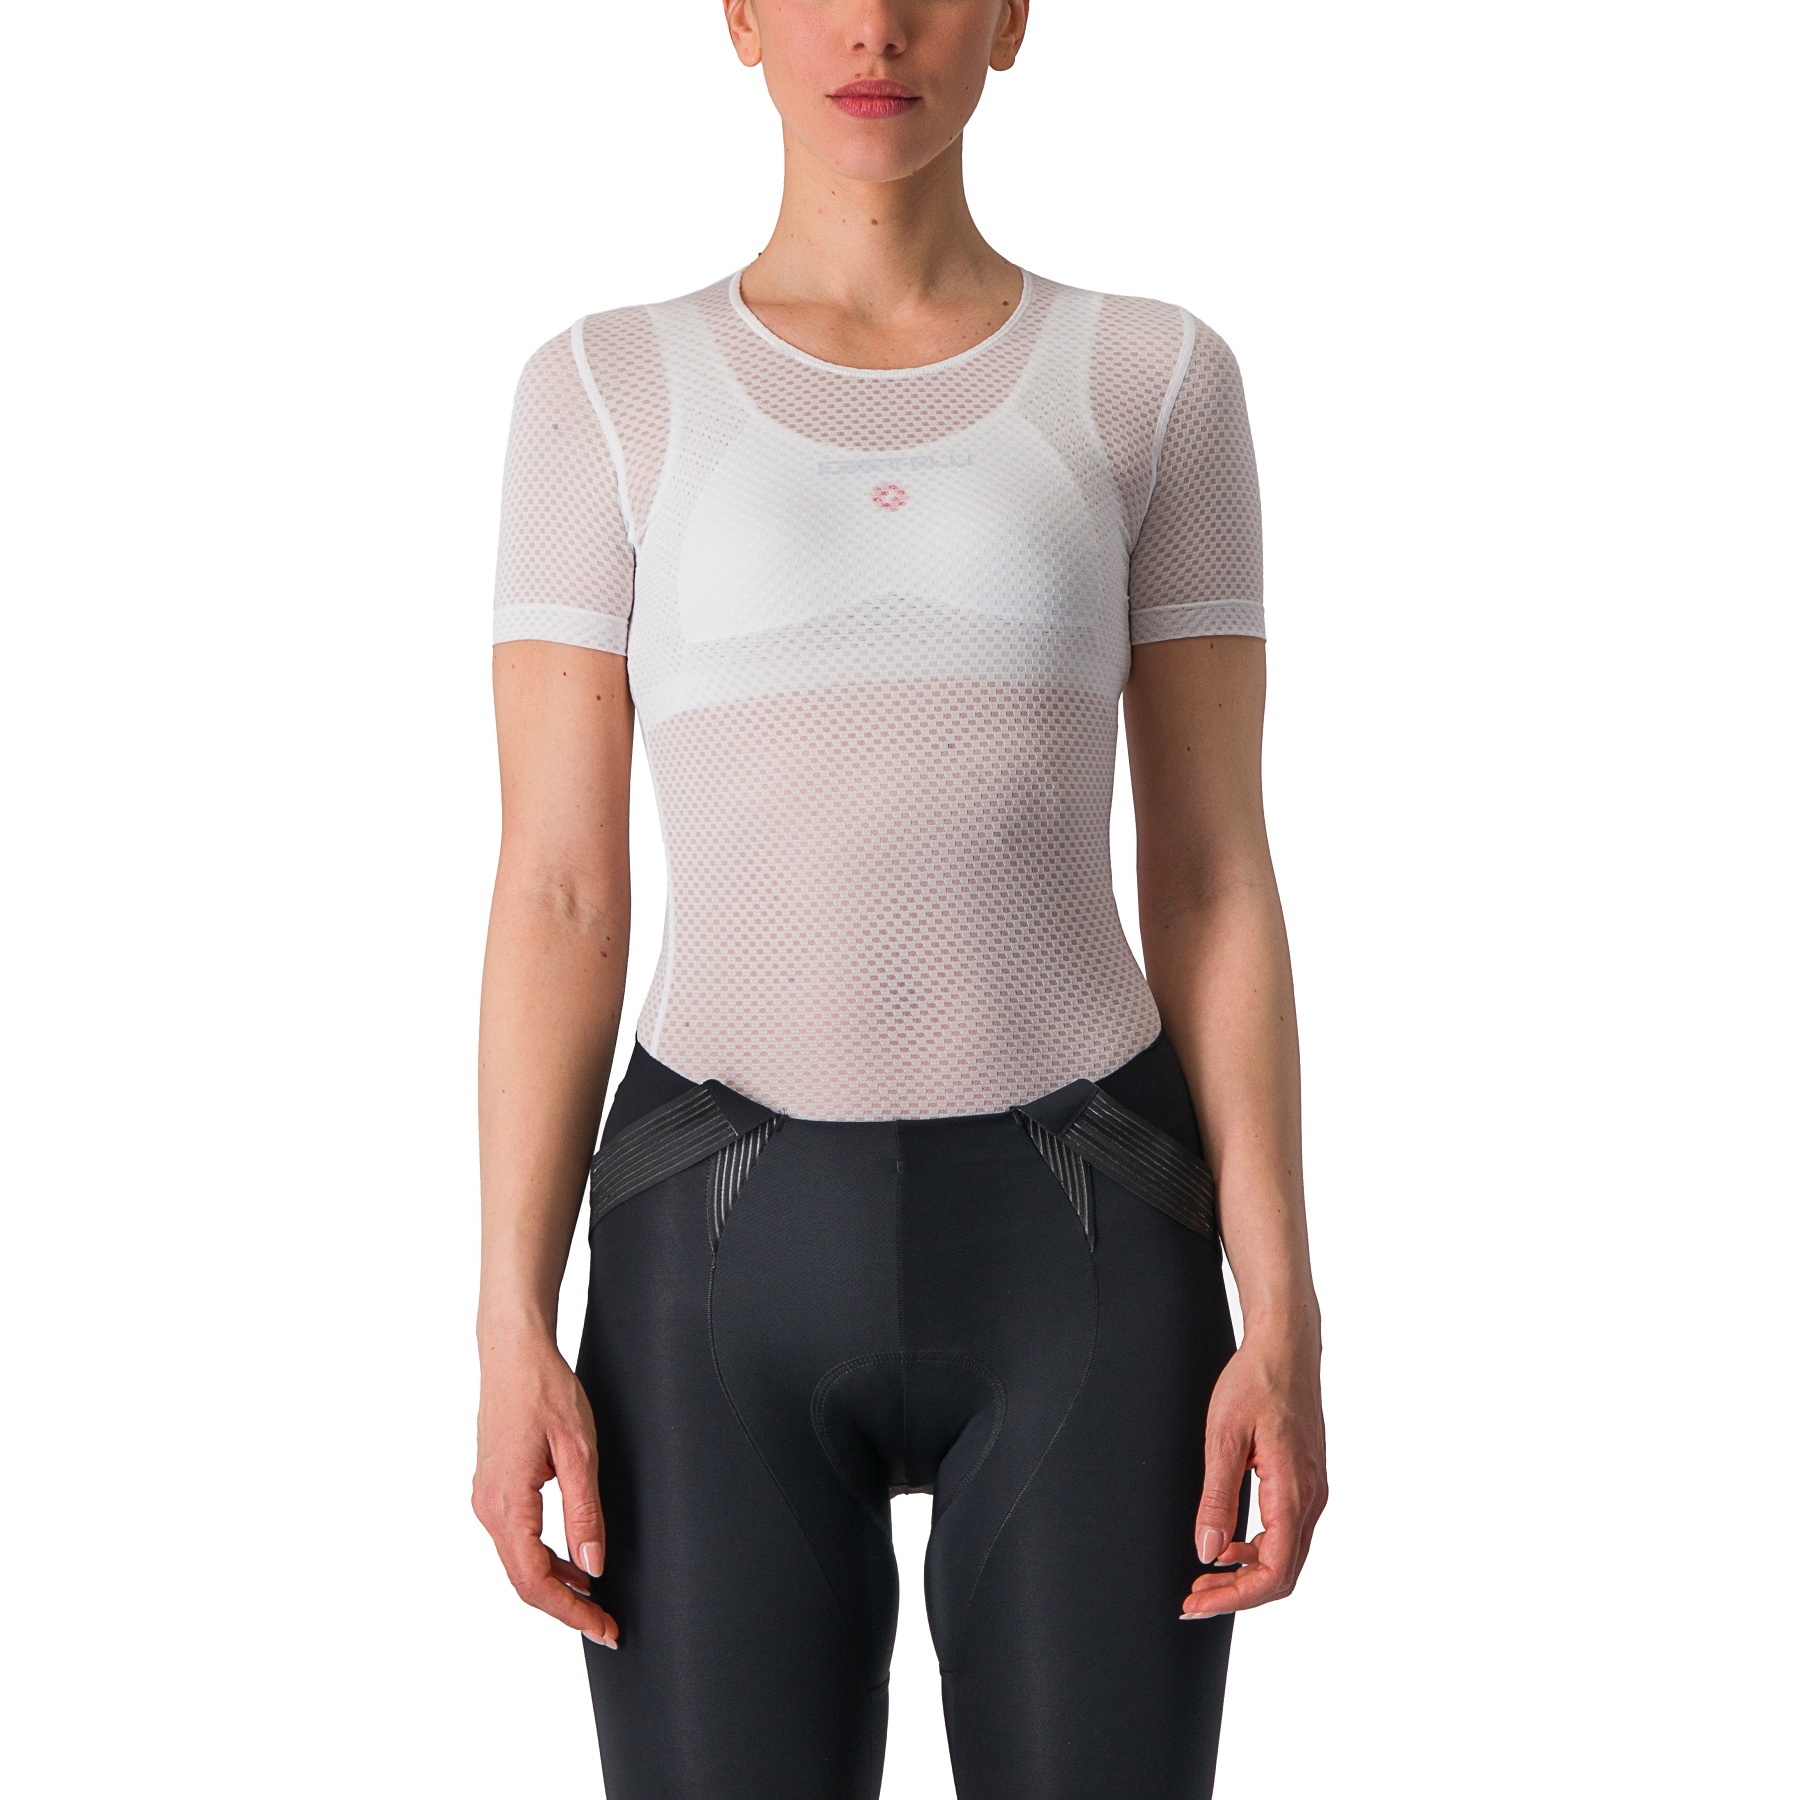 Produktbild von Castelli Pro Mesh Kurzarm Unterhemd Damen - weiß 001